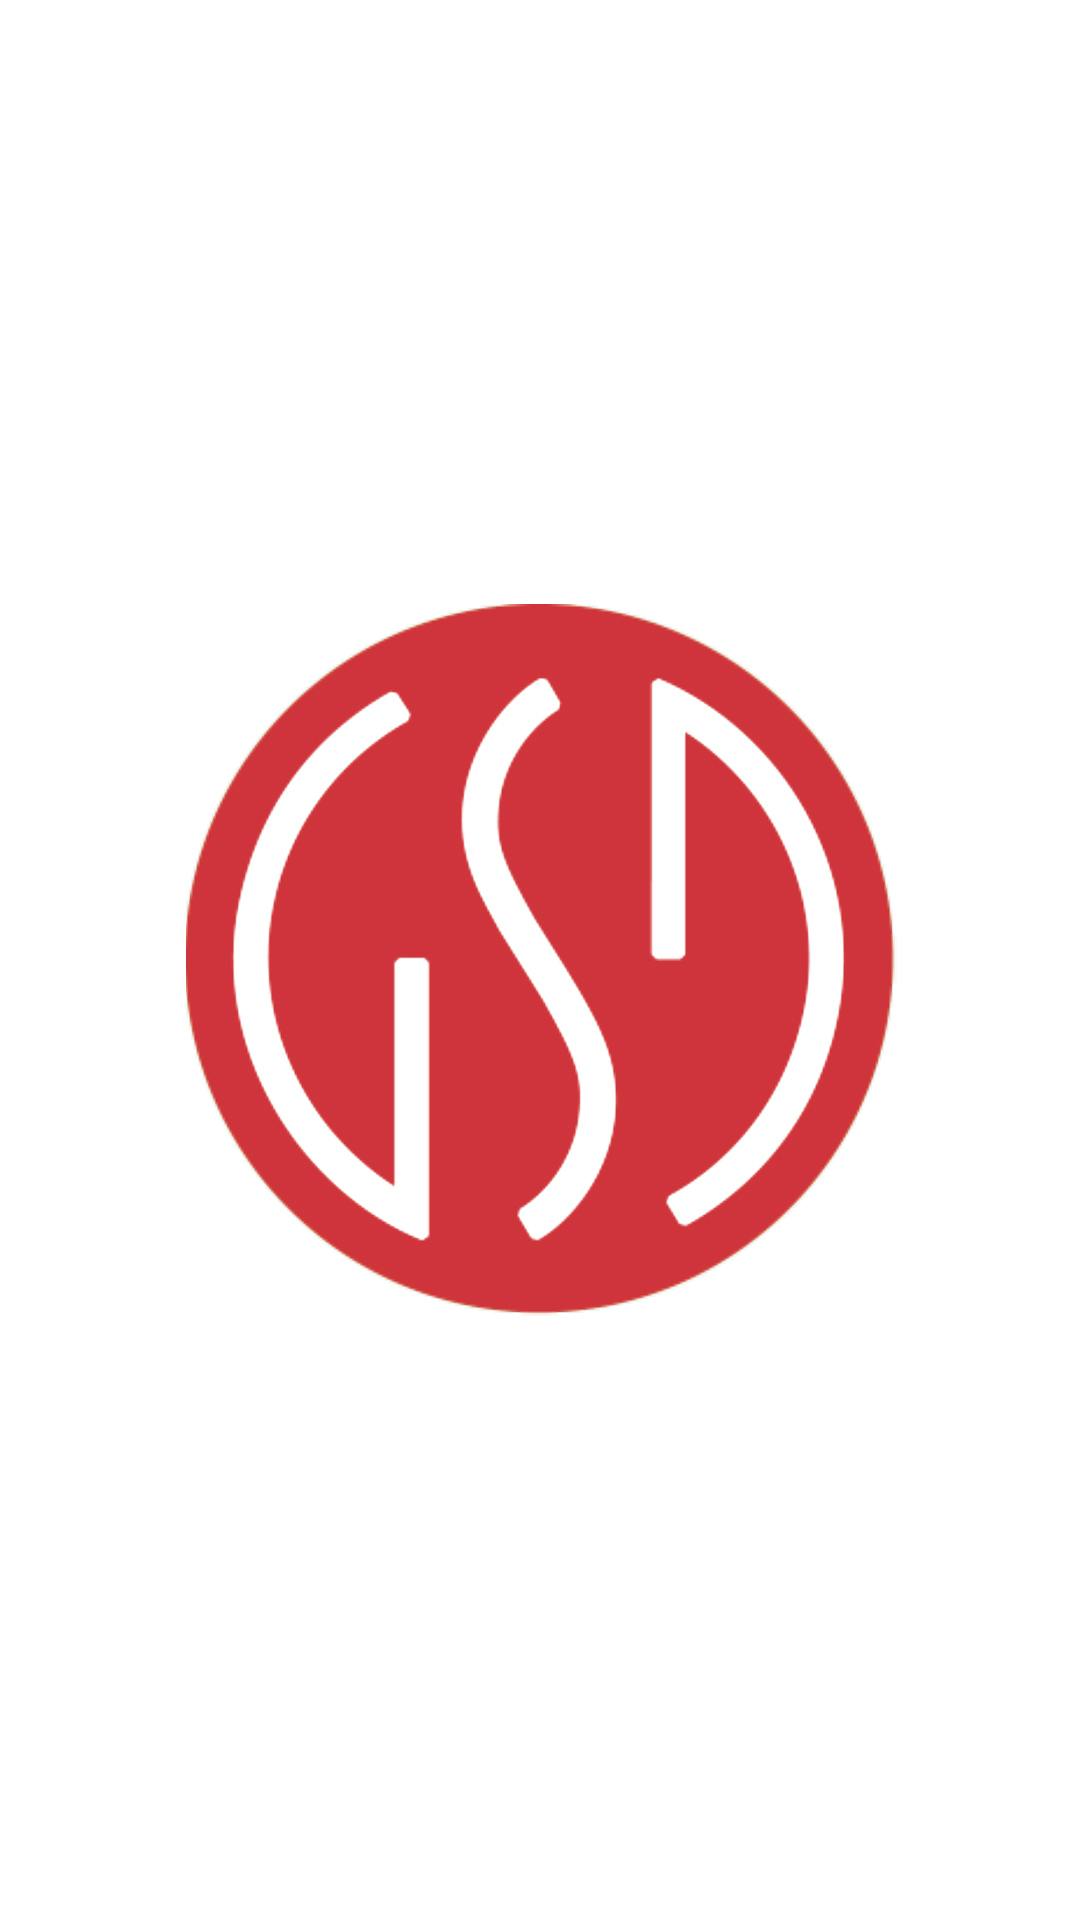 Logo del Gruppo San Donato (Istituti Clinici Zucchi): circonferenza rossa con lettere "GSD" bianche al suo centro.